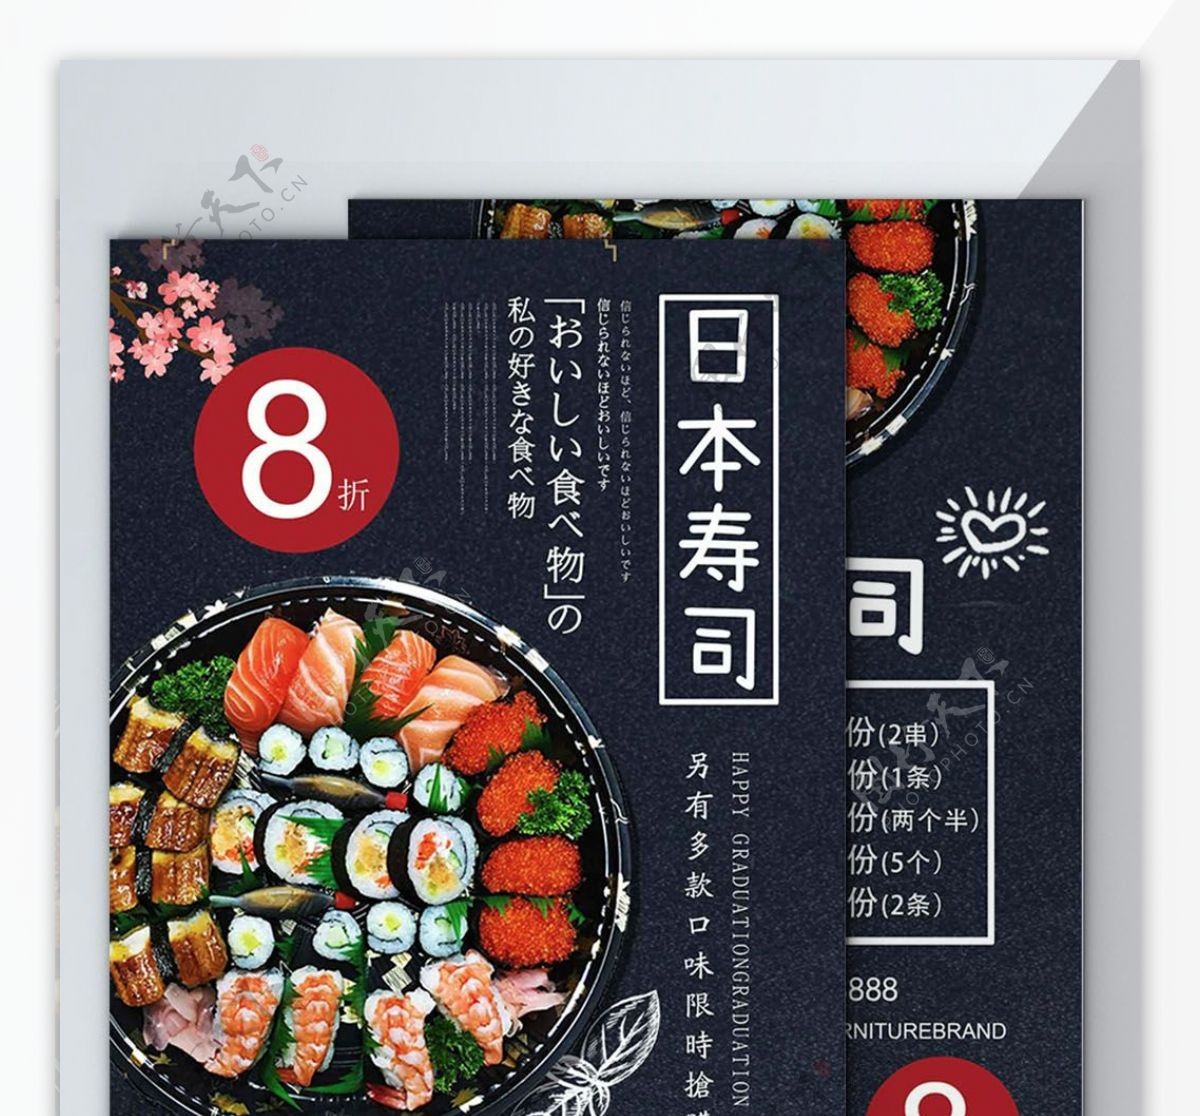 深色背景美味日本寿司宣传dm单页菜单